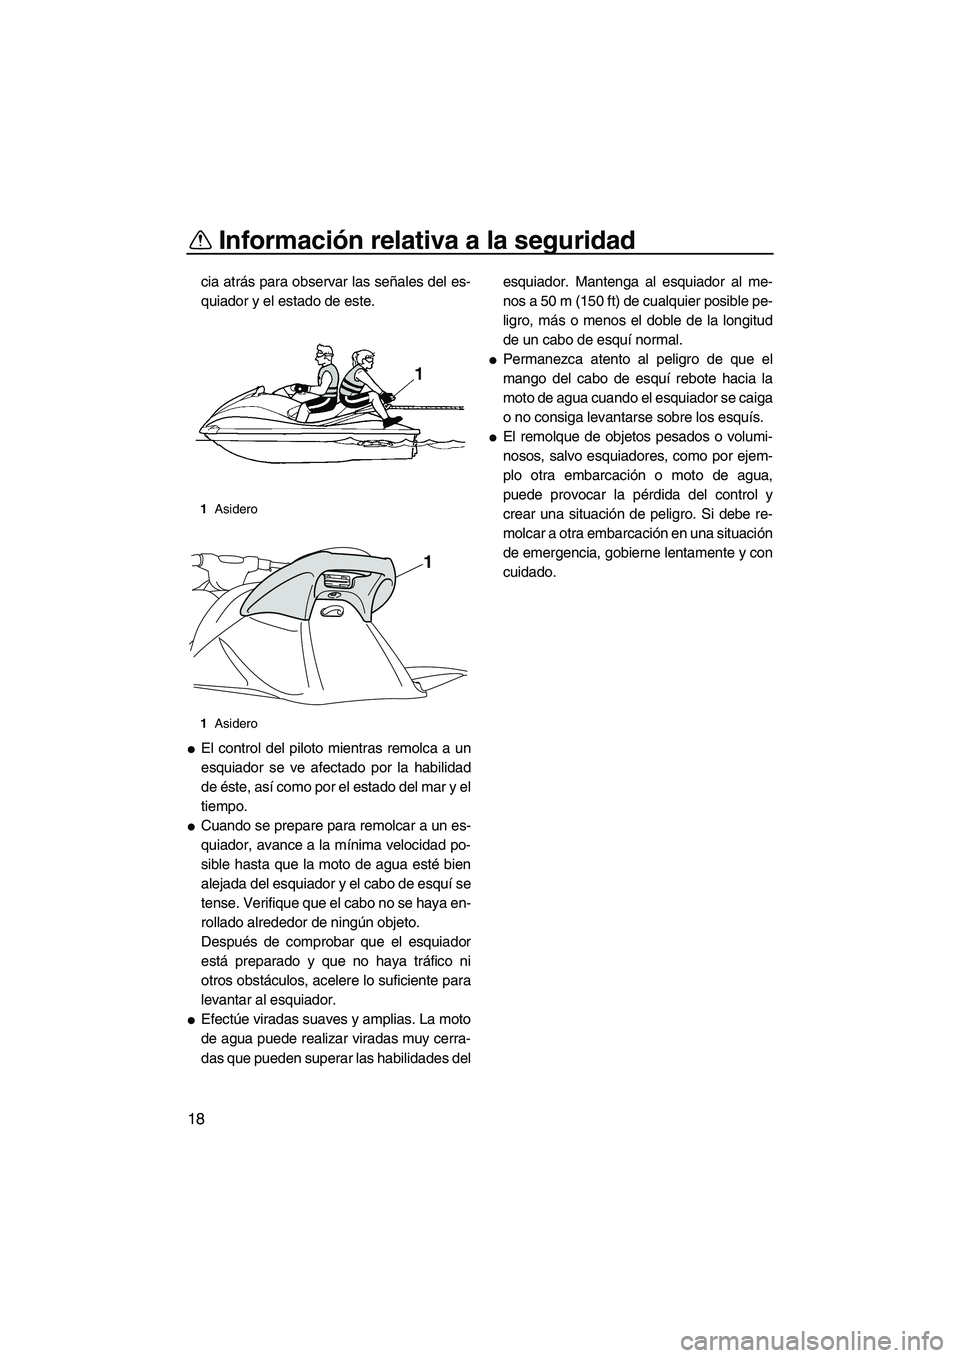 YAMAHA VXS 2012  Manuale de Empleo (in Spanish) Información relativa a la seguridad
18
cia atrás para observar las señales del es-
quiador y el estado de este.
El control del piloto mientras remolca a un
esquiador se ve afectado por la habilida